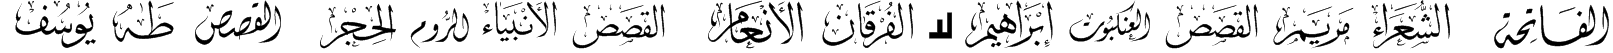 Mcs Swer Al_Quran 1 Font